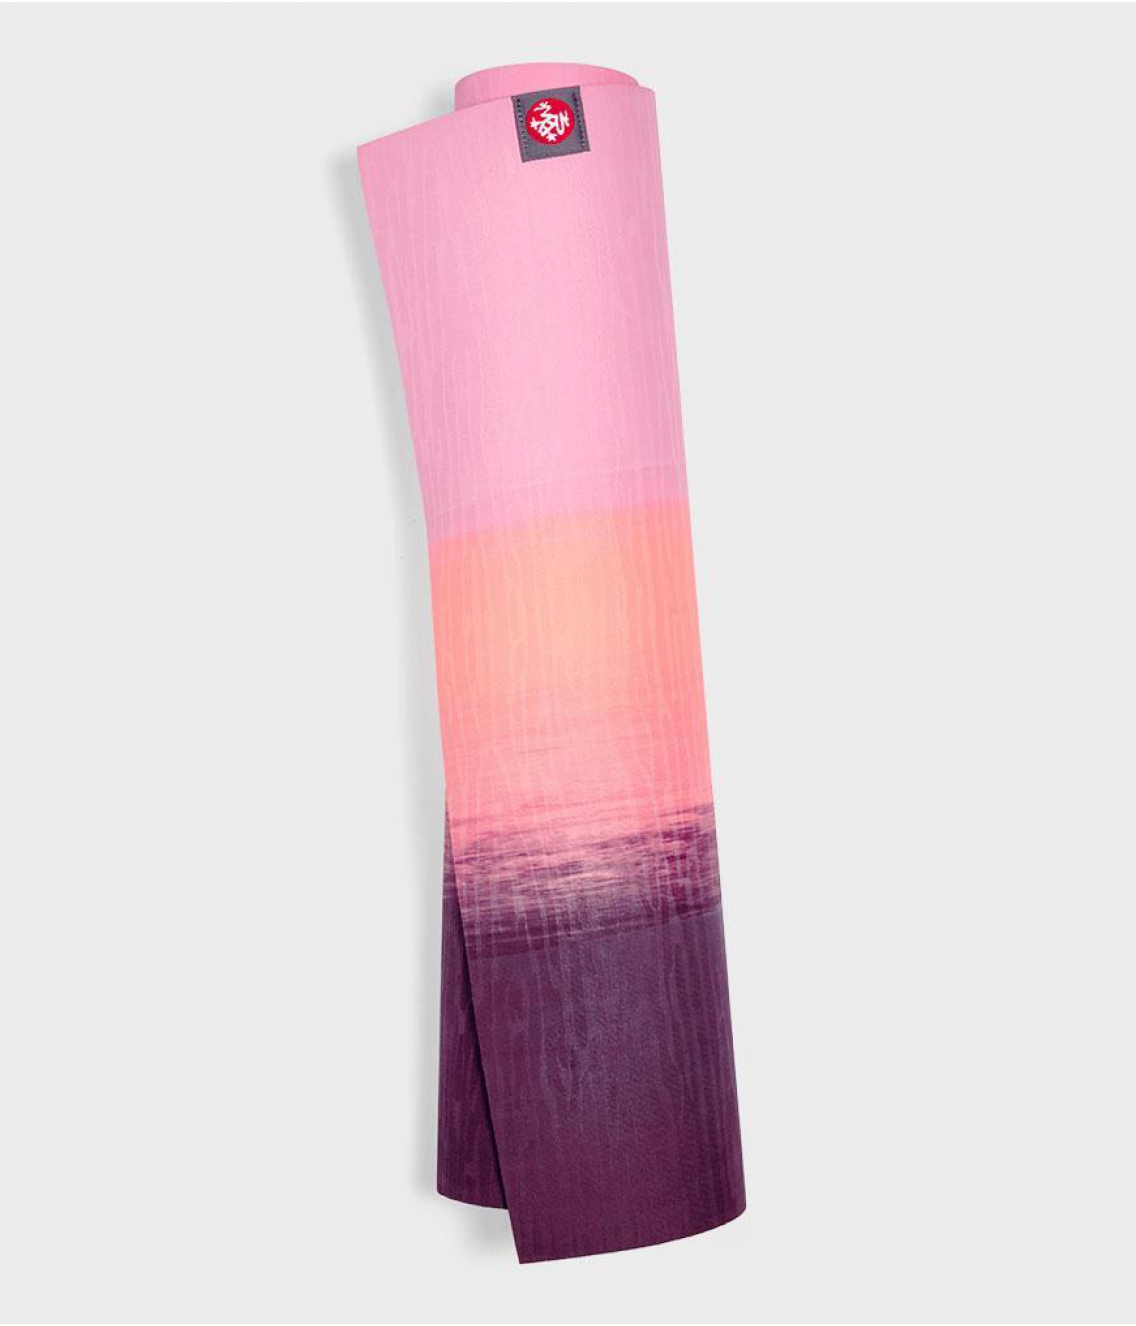 Профессиональный каучуковый коврик для йоги Manduka eKO lite 180*61*0,4 см - Fuchsia Stripe (Limited Edition)